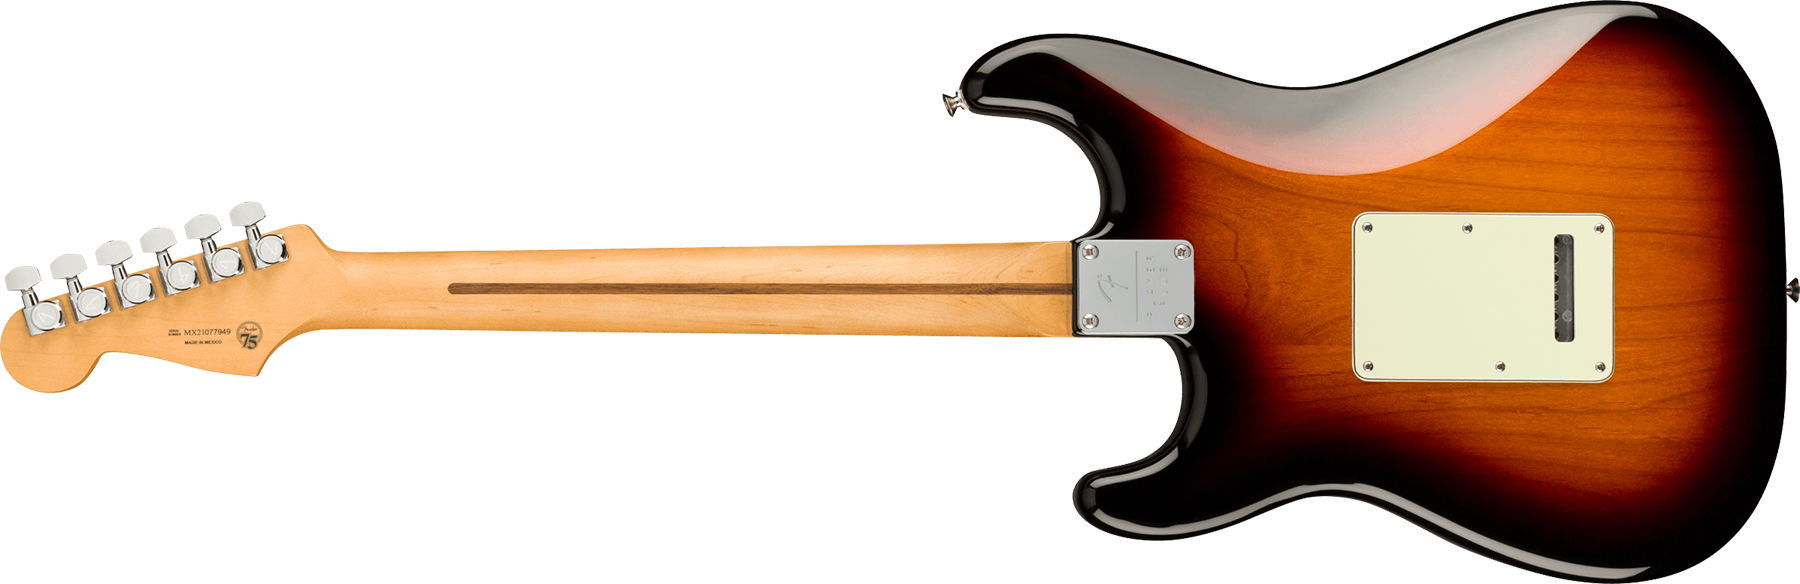 Fender Strat Player Plus Mex 3s Trem Mn - 3-color Sunburst - Guitare Électrique Forme Str - Variation 1